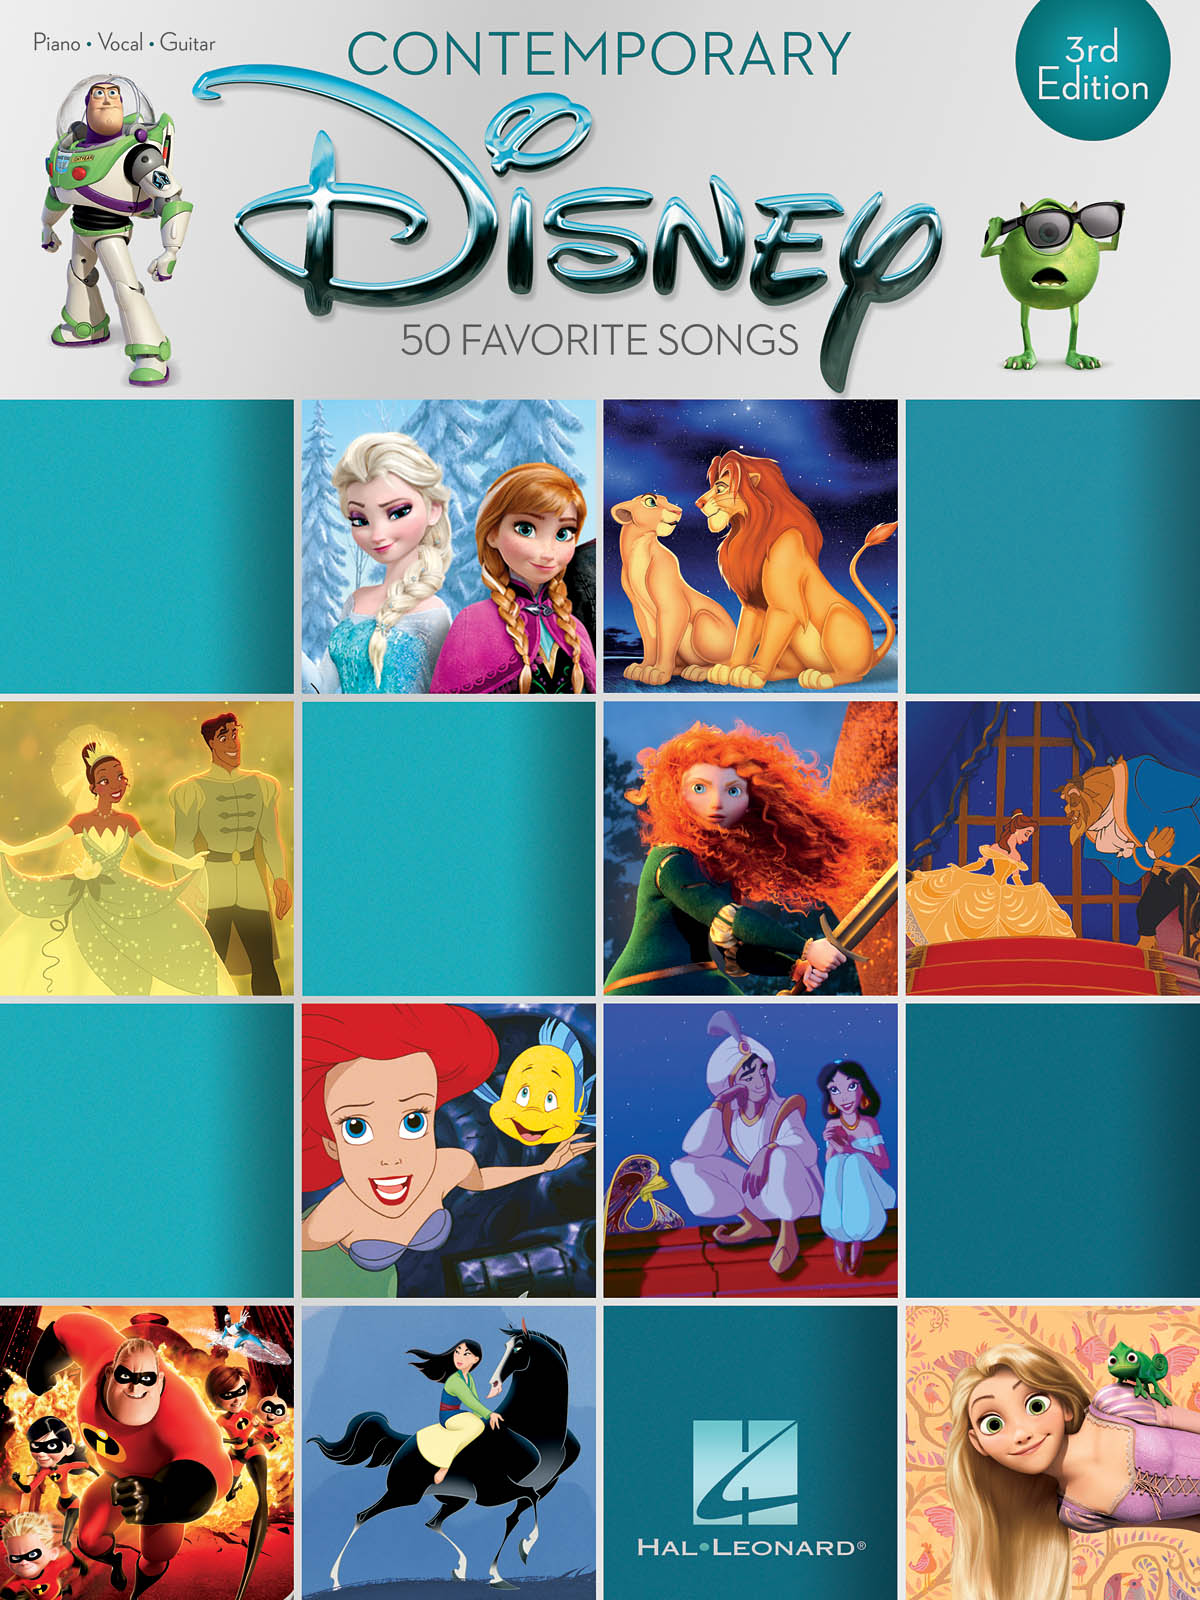 Contemporary Disney - 3rd Edition (PVG) - 50 Favorite Songs - noty pro zpěv a klavír s akordy na kytaru